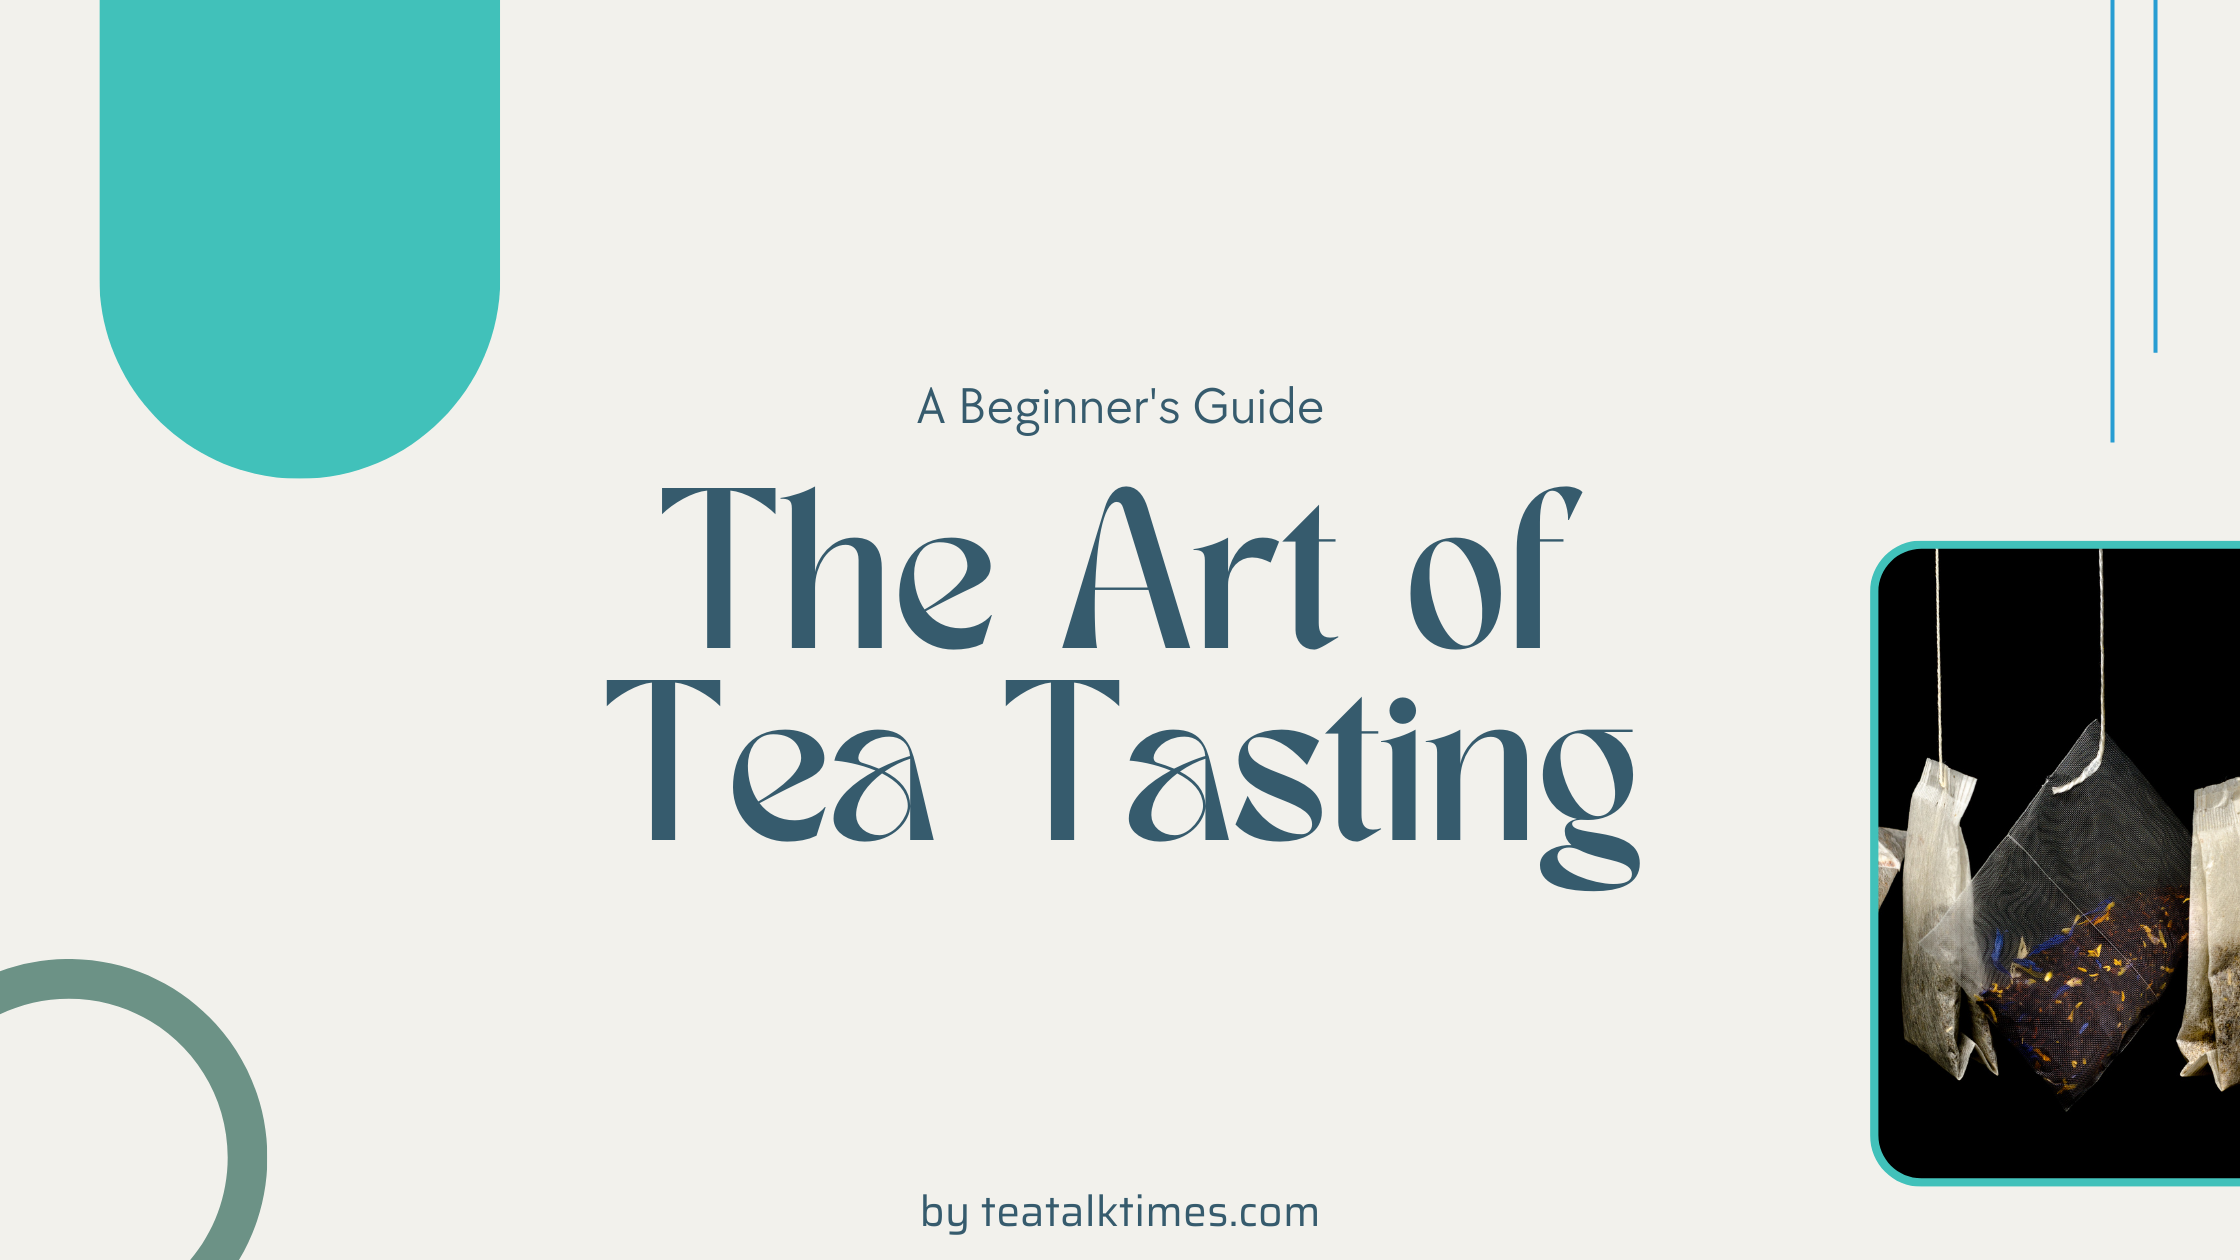 The Art of Tea Tasting: A Beginner's Guide